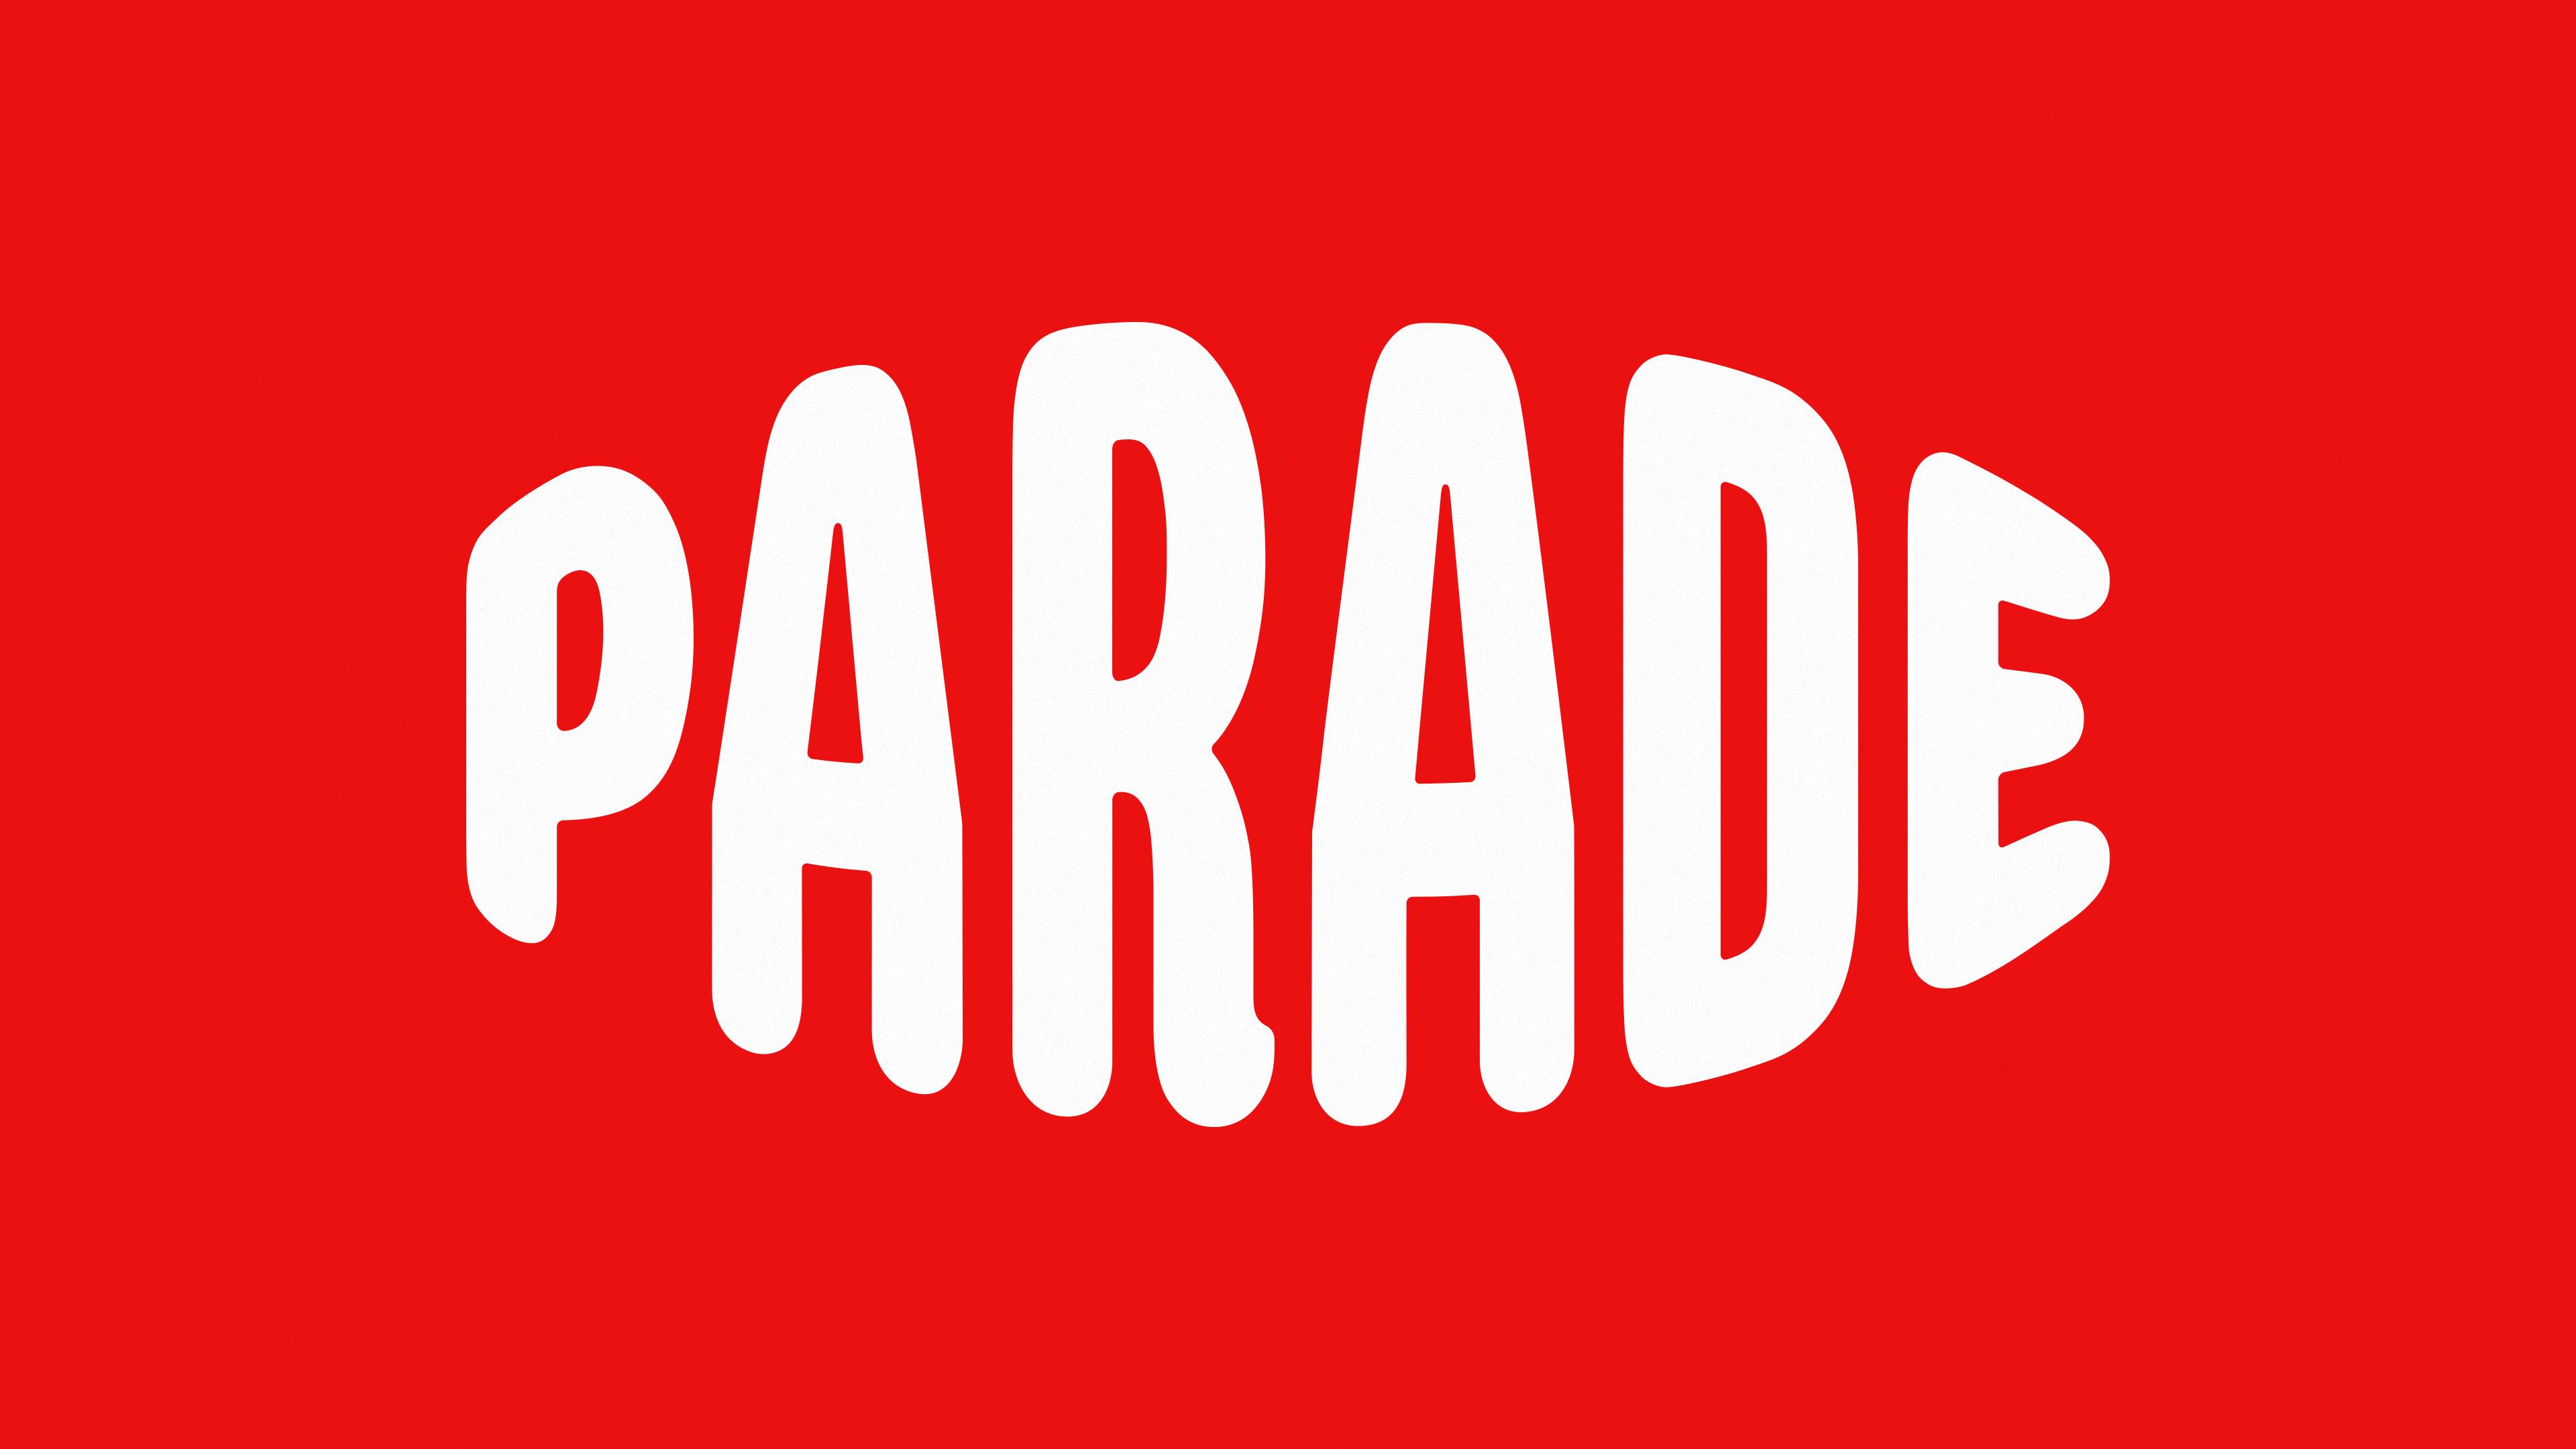 Brandfetch  Parade Logos & Brand Assets